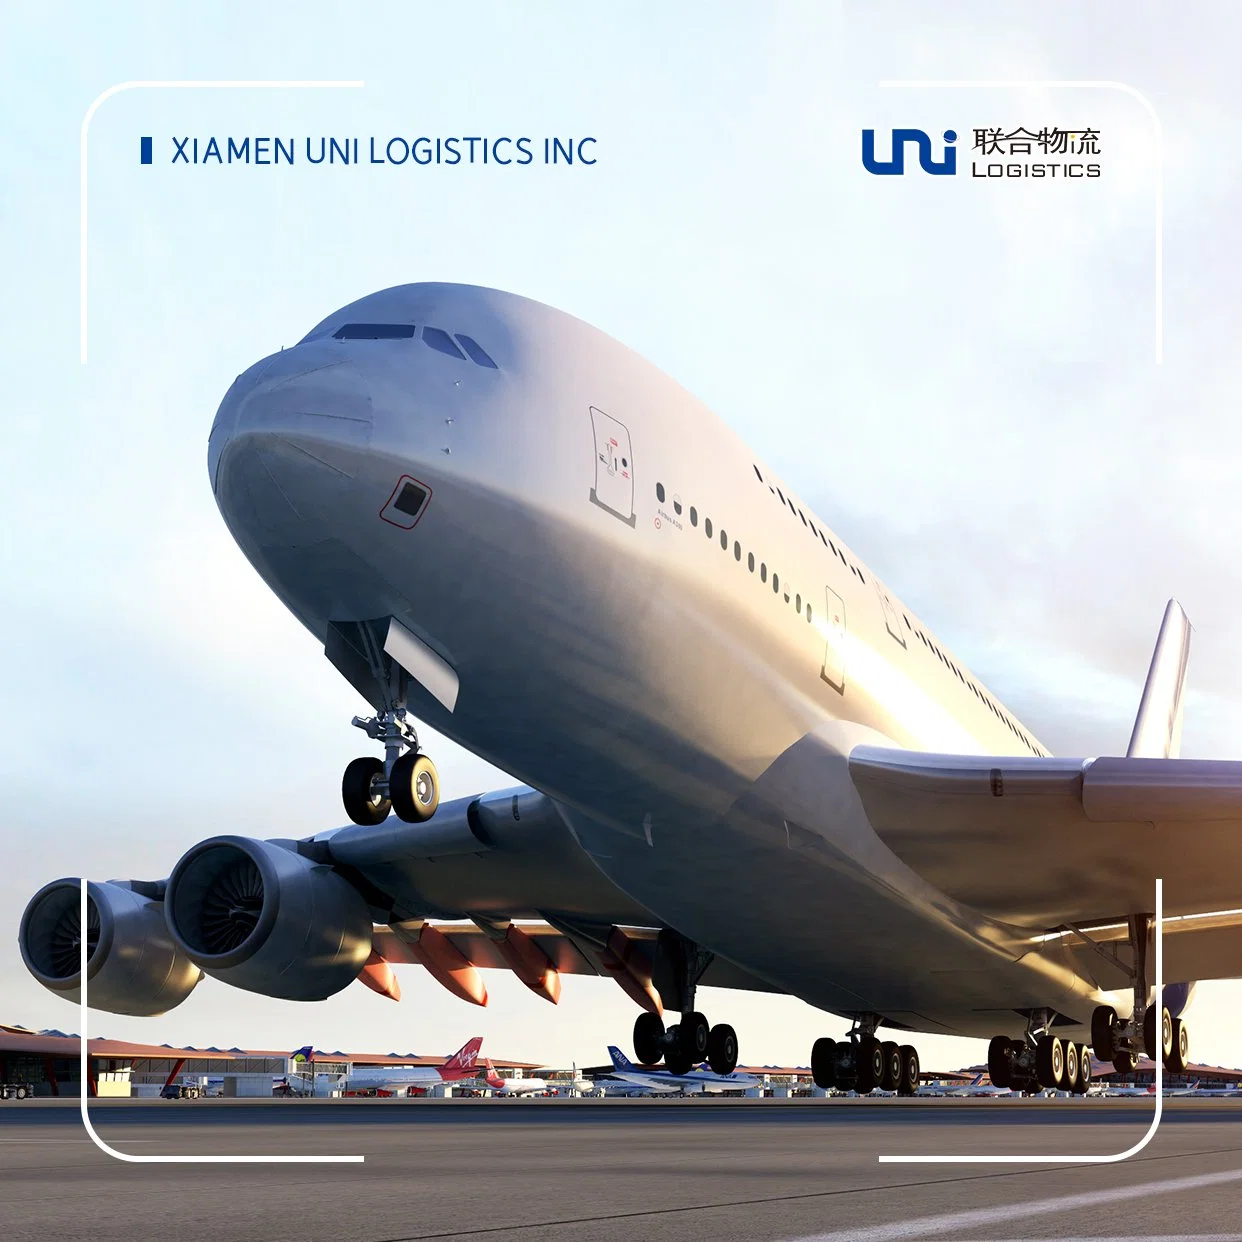 Air Express/Shipping/Freight/cargo Agent Services, da China à Columbia, América do Sul